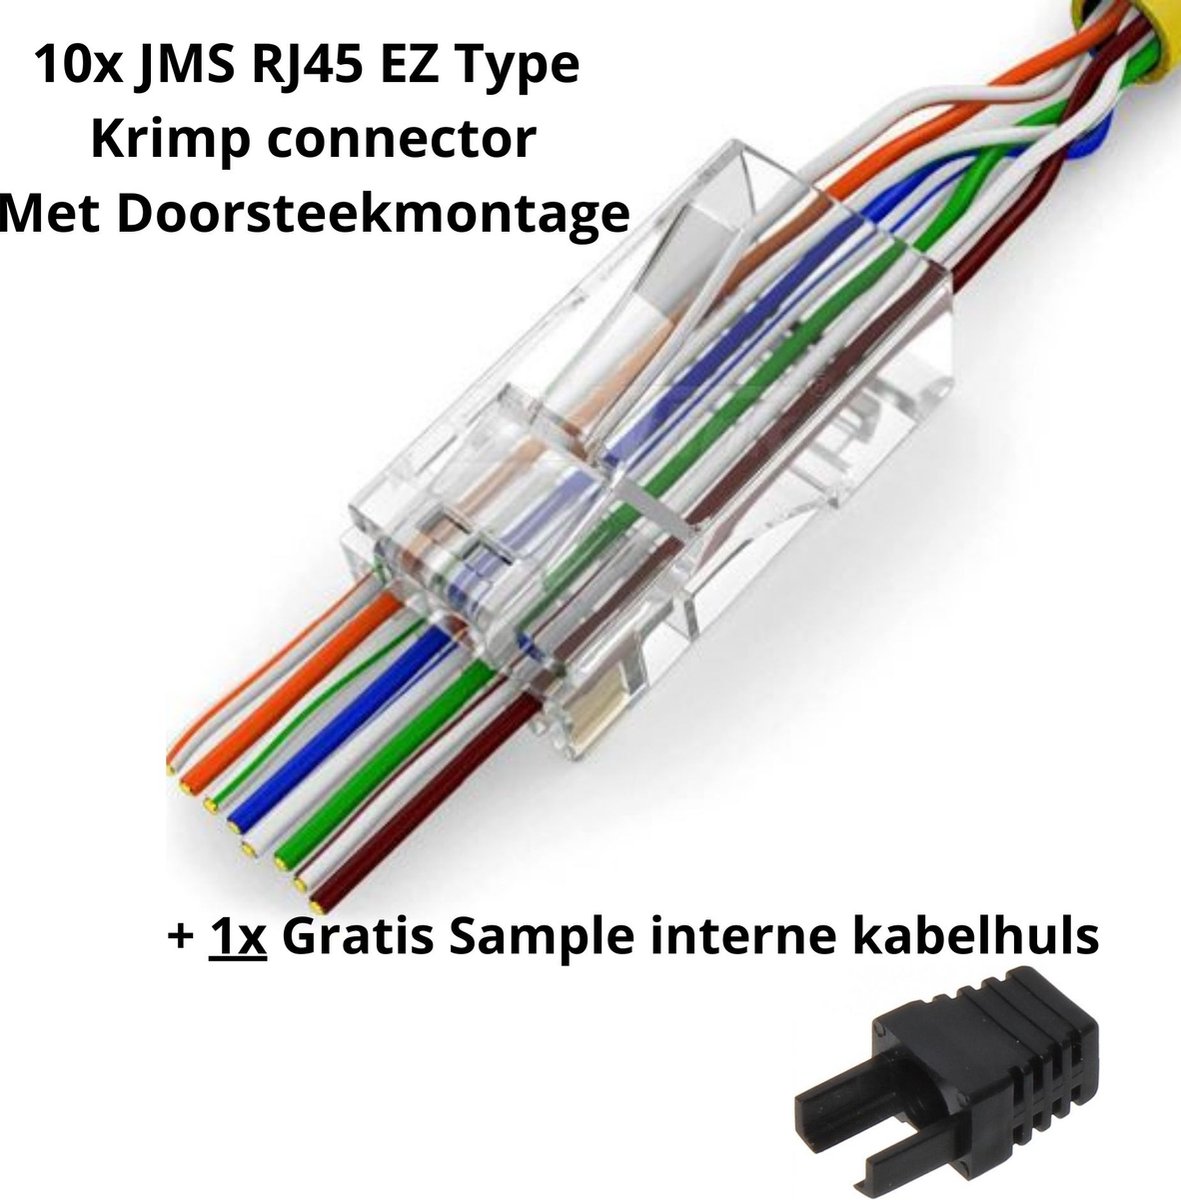 Prise RJ45 - Type : Cat 6a Connexion : RJ45 mâle, bande LSA Convient pour :  Câbles flexibles et fixes Nombre : Chaque